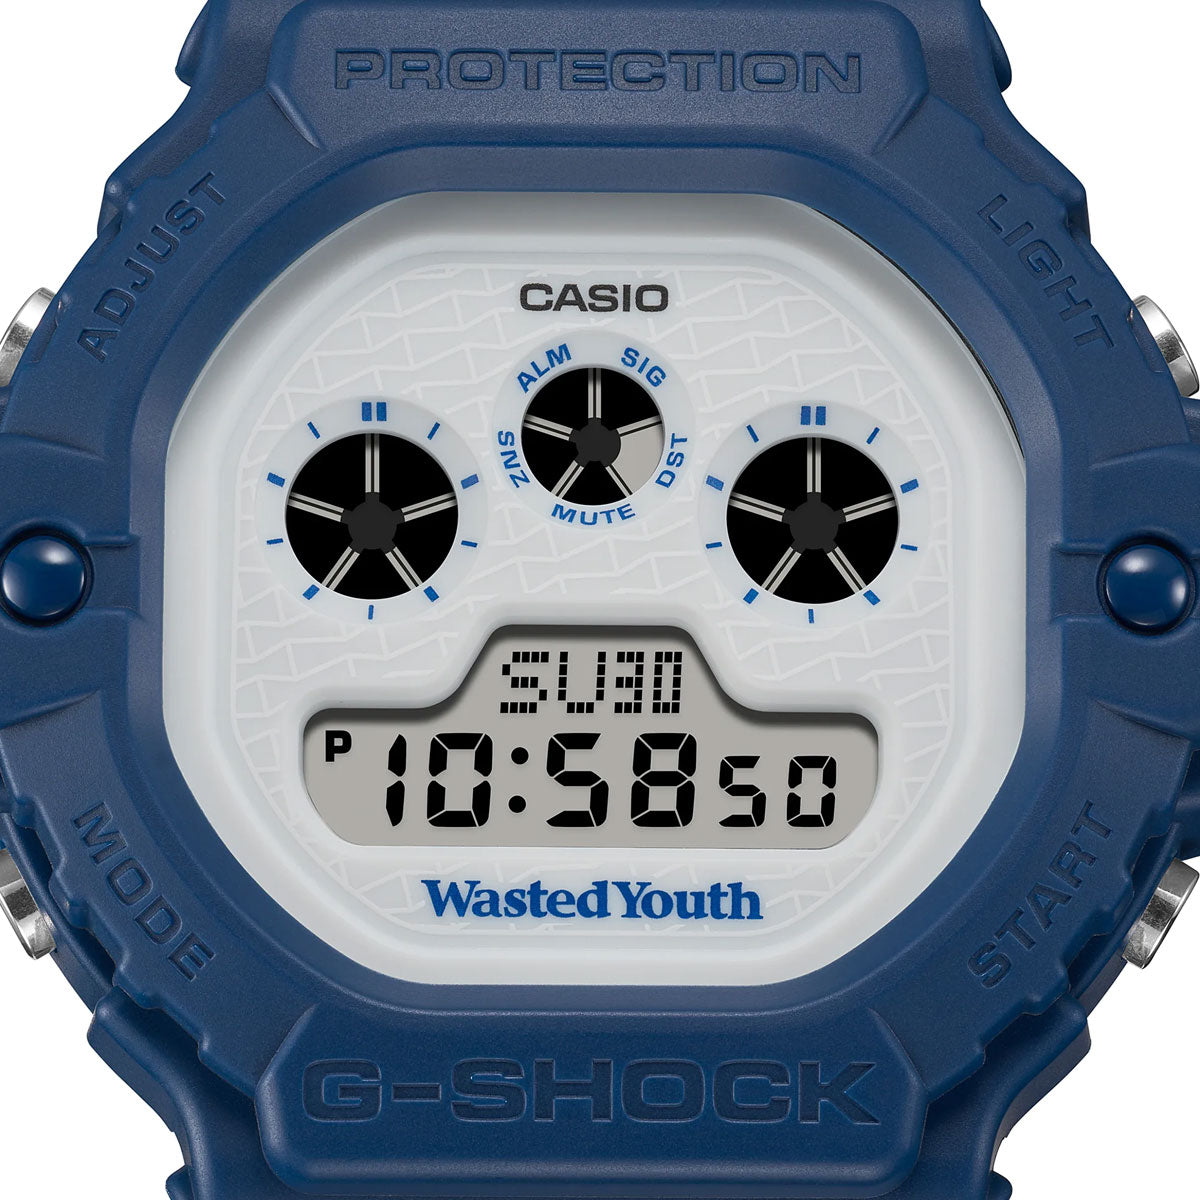 Casio x Wasted Youth G-Shock DW-5900WY-2ER (Blau)  - Allike Store